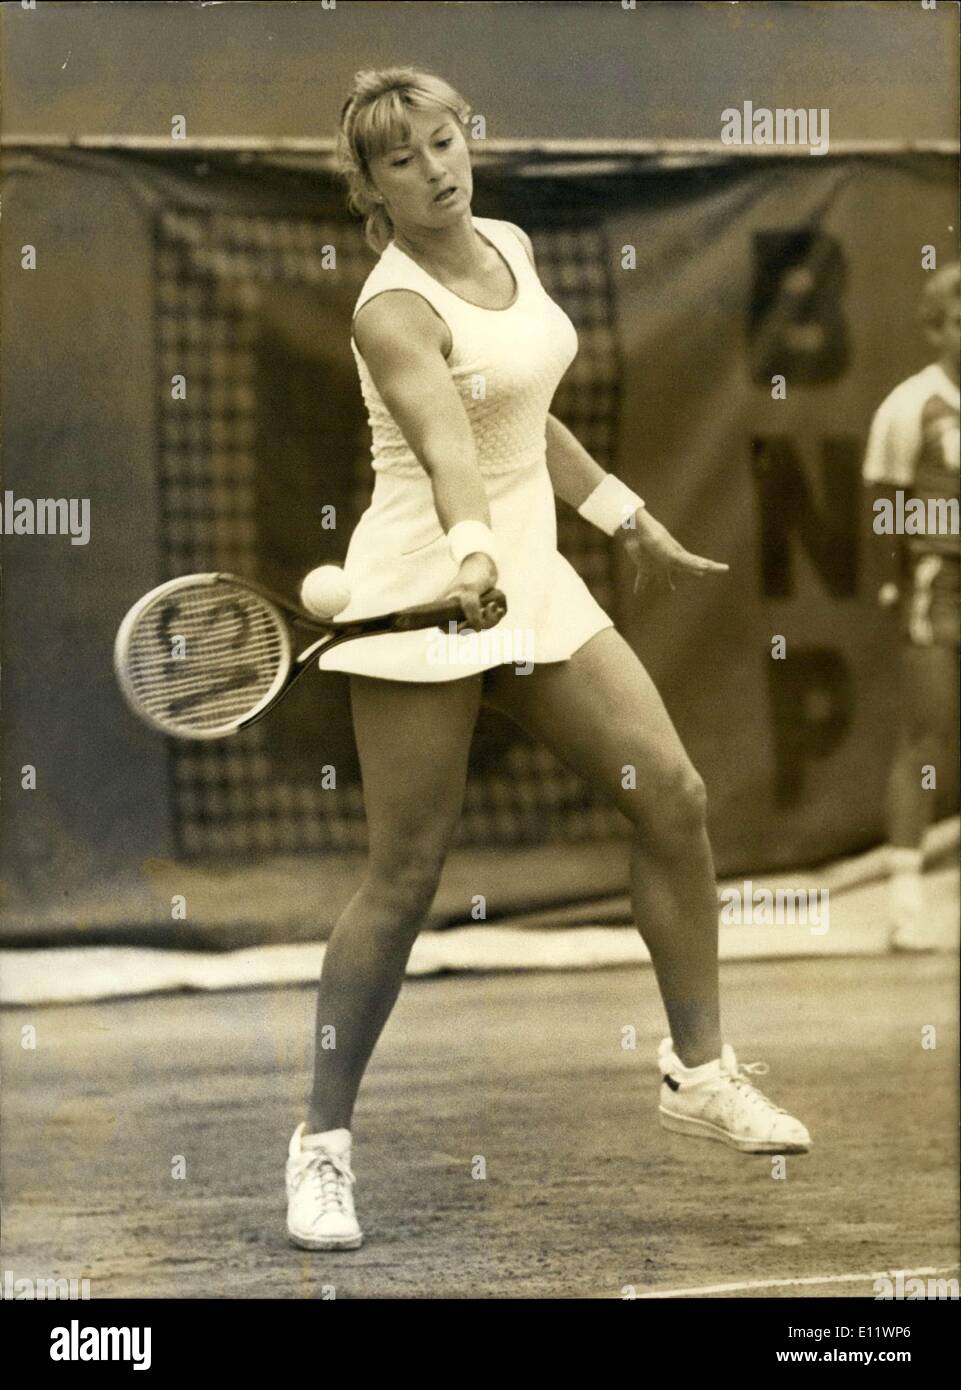 28 maggio 1980 - Renata Tomanova (Checoslovakia) ha suonato Virgina Wade (Inghilterra) in un match il terzo giorno del francese si apre. Ecco una foto di Tomanova in azione. Foto Stock